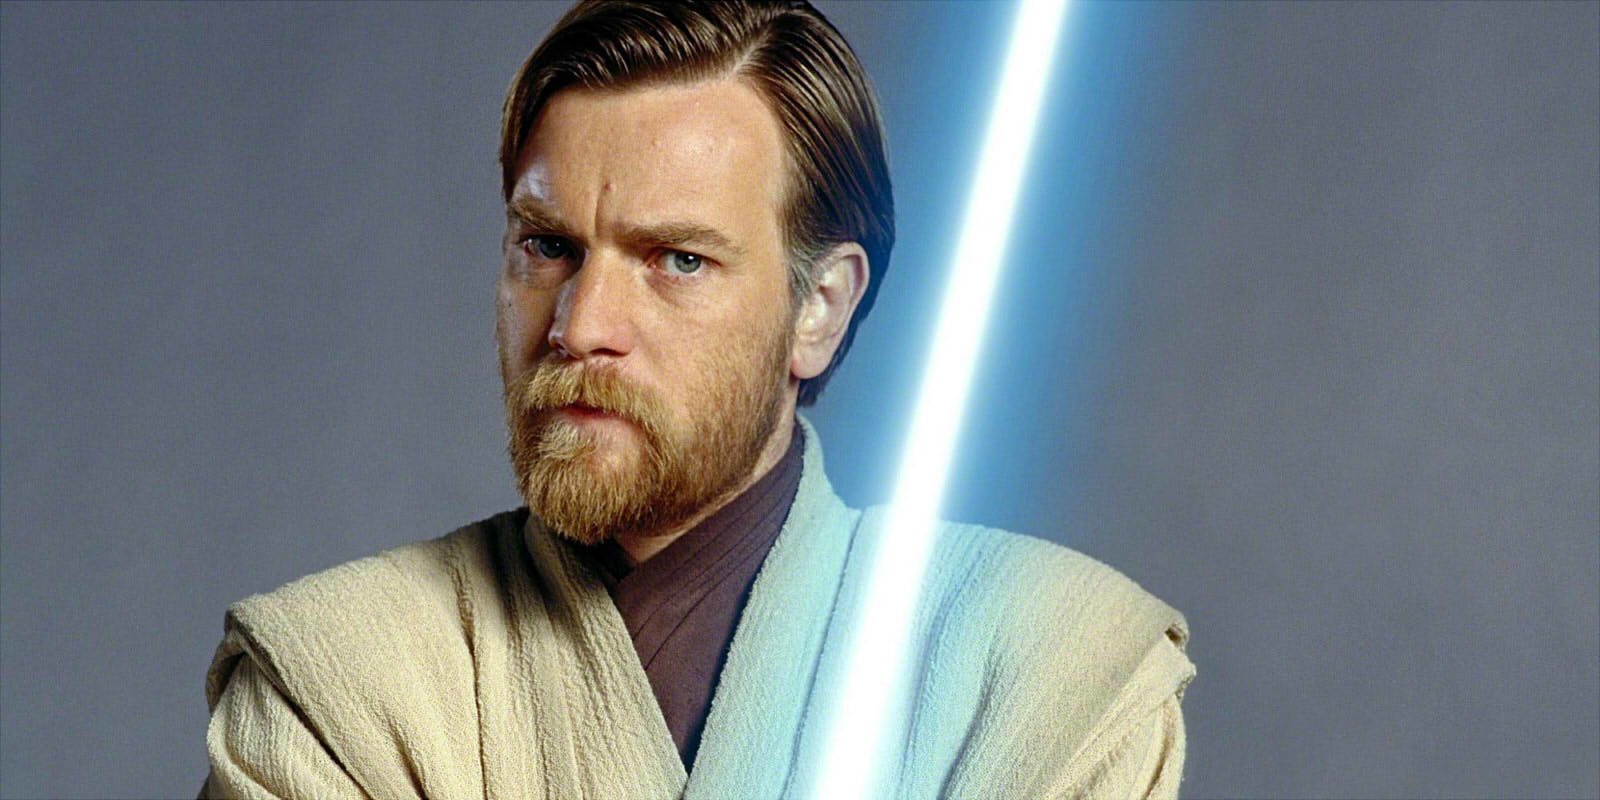 Un rumor predice el regreso de Obi-Wan Kenobi en el 'Episodio IX'